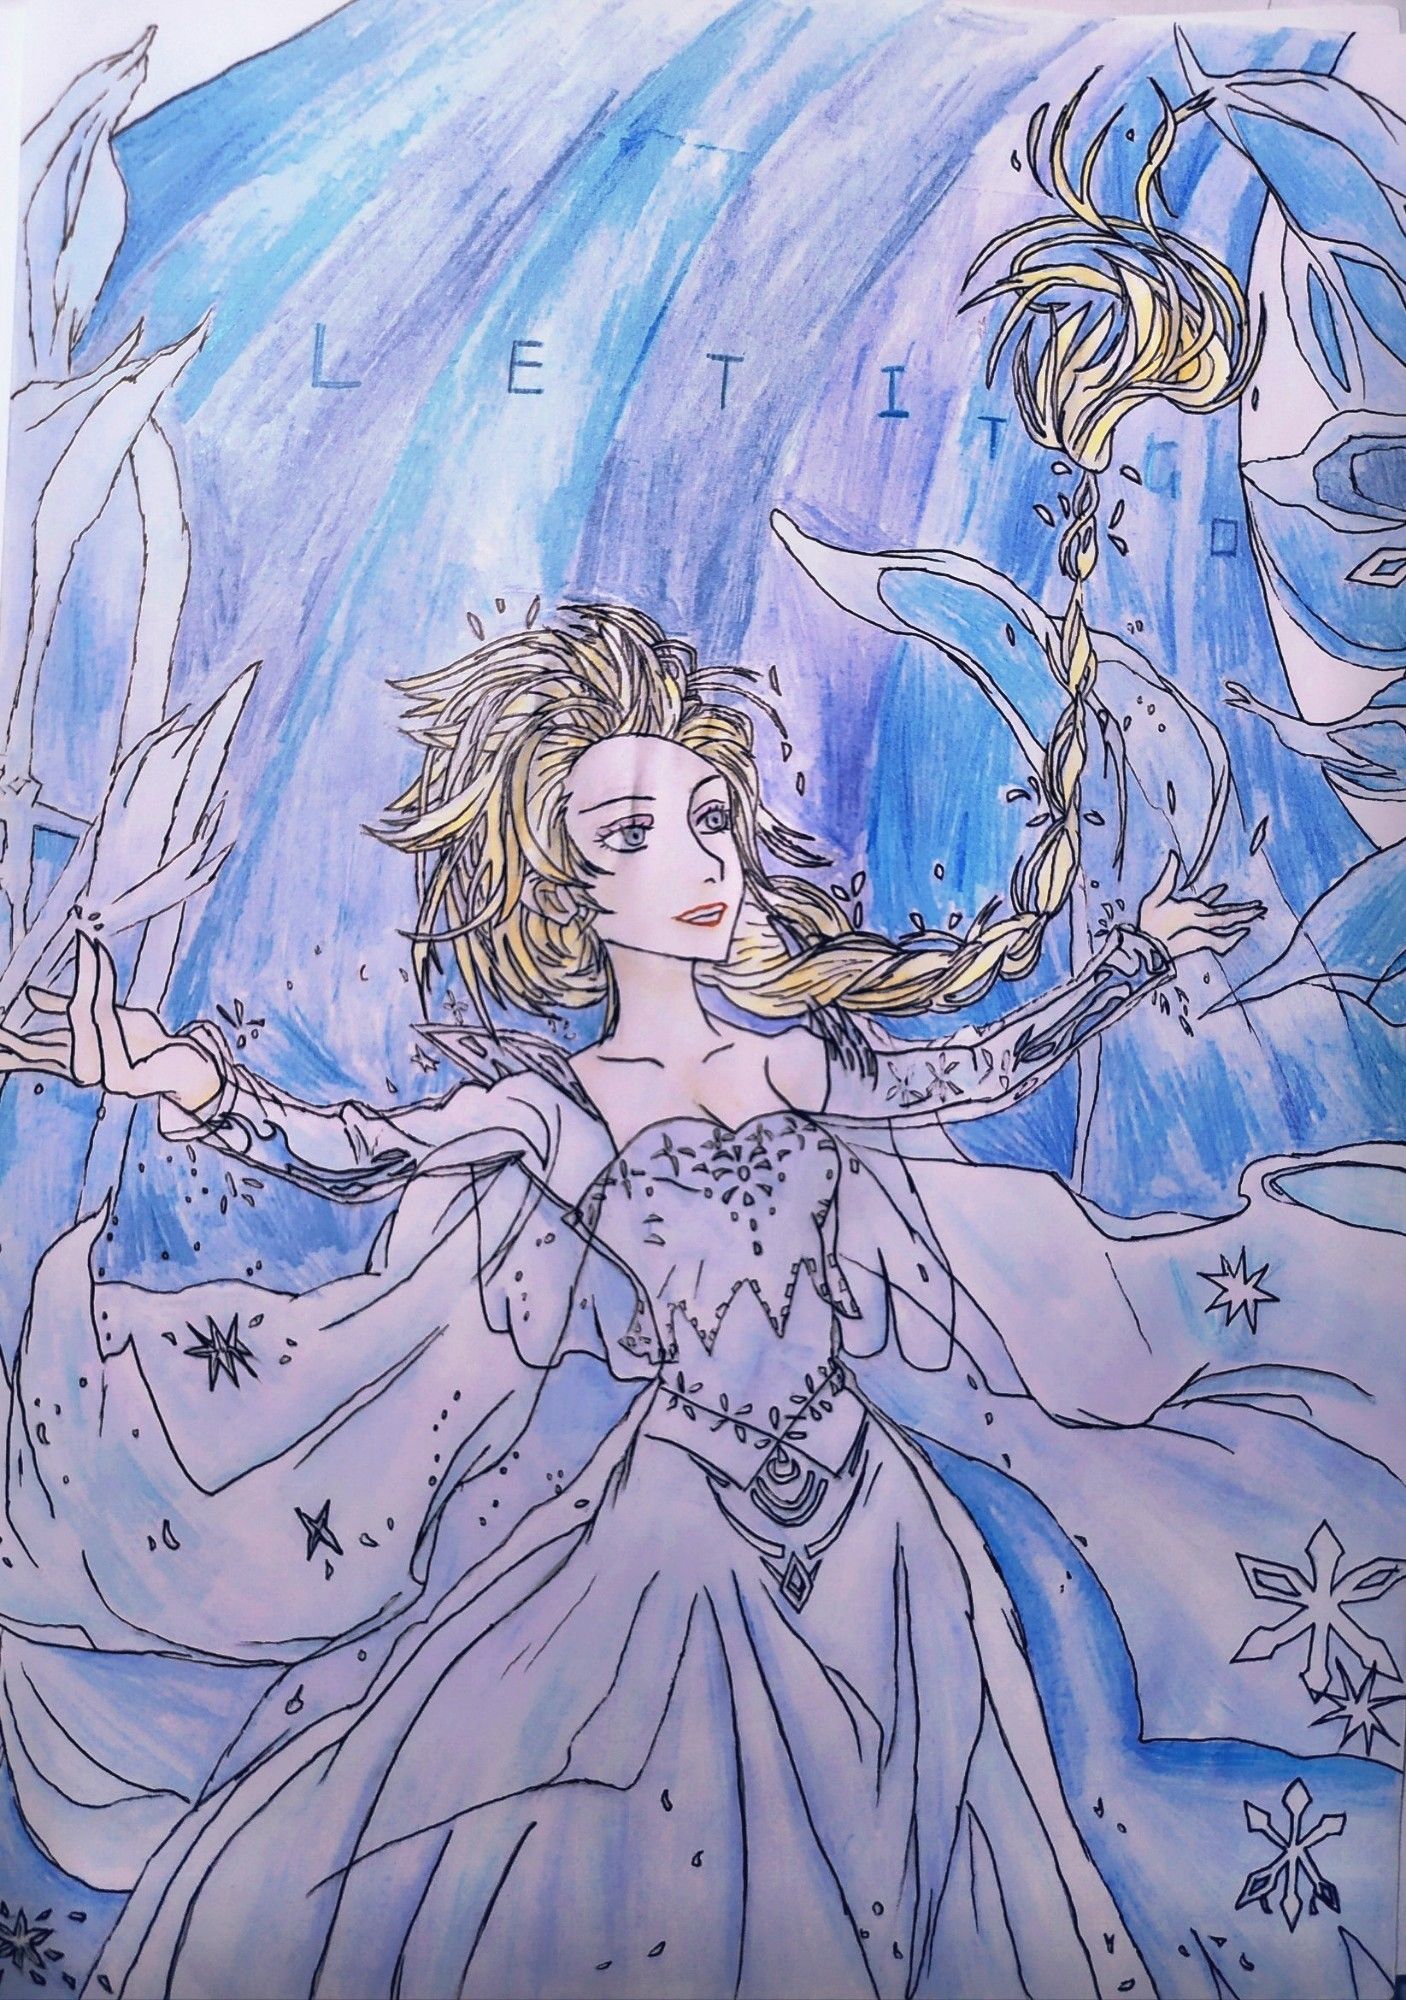 Elsa插画图片壁纸